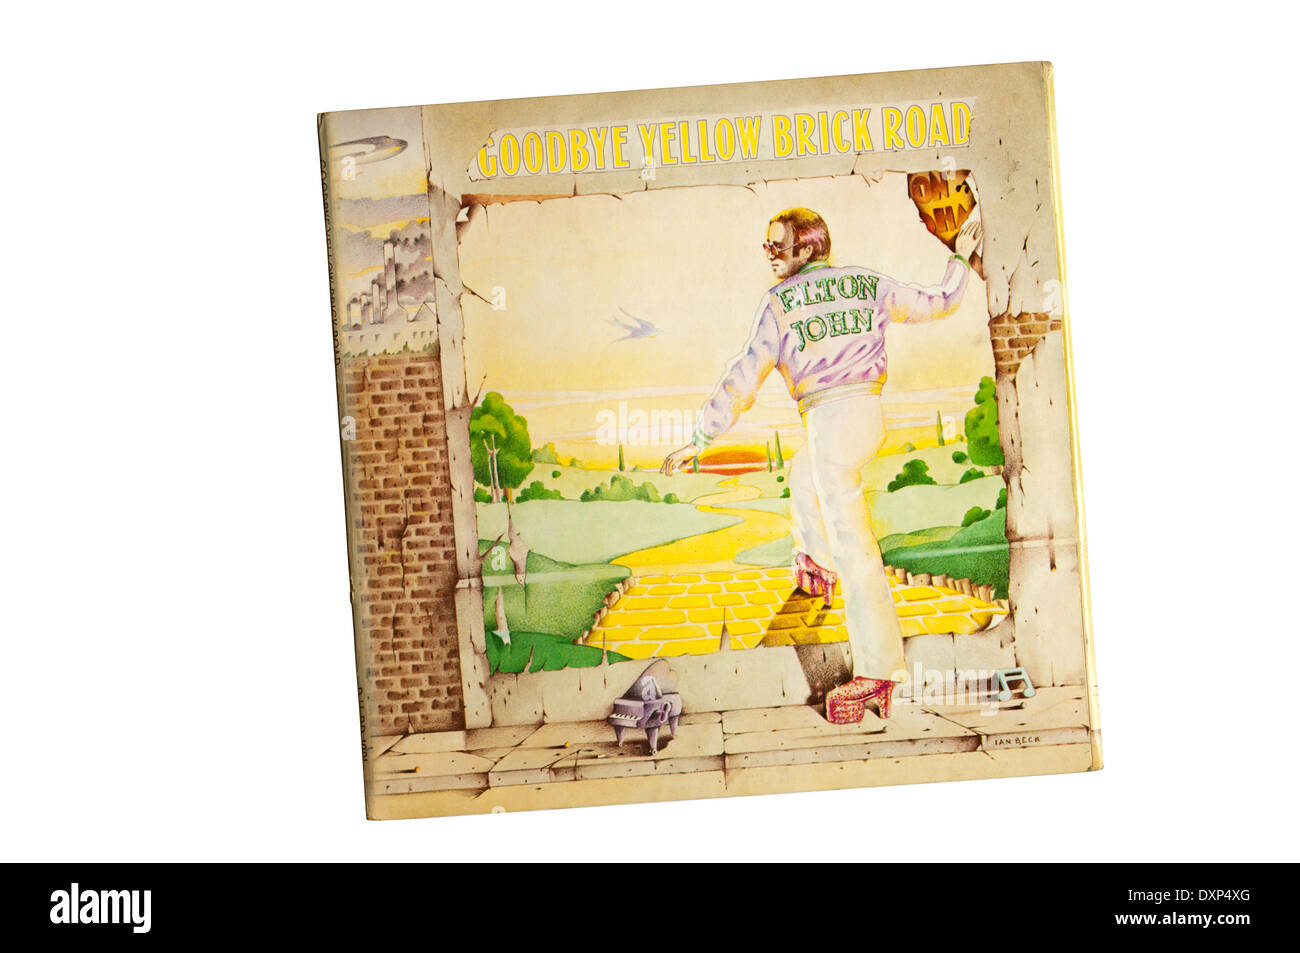 Goodbye war Yellow Brick Road das 7. Studioalbum der britischen Singer-Songwriter Elton John. Es erschien im Jahr 1973. Stockfoto